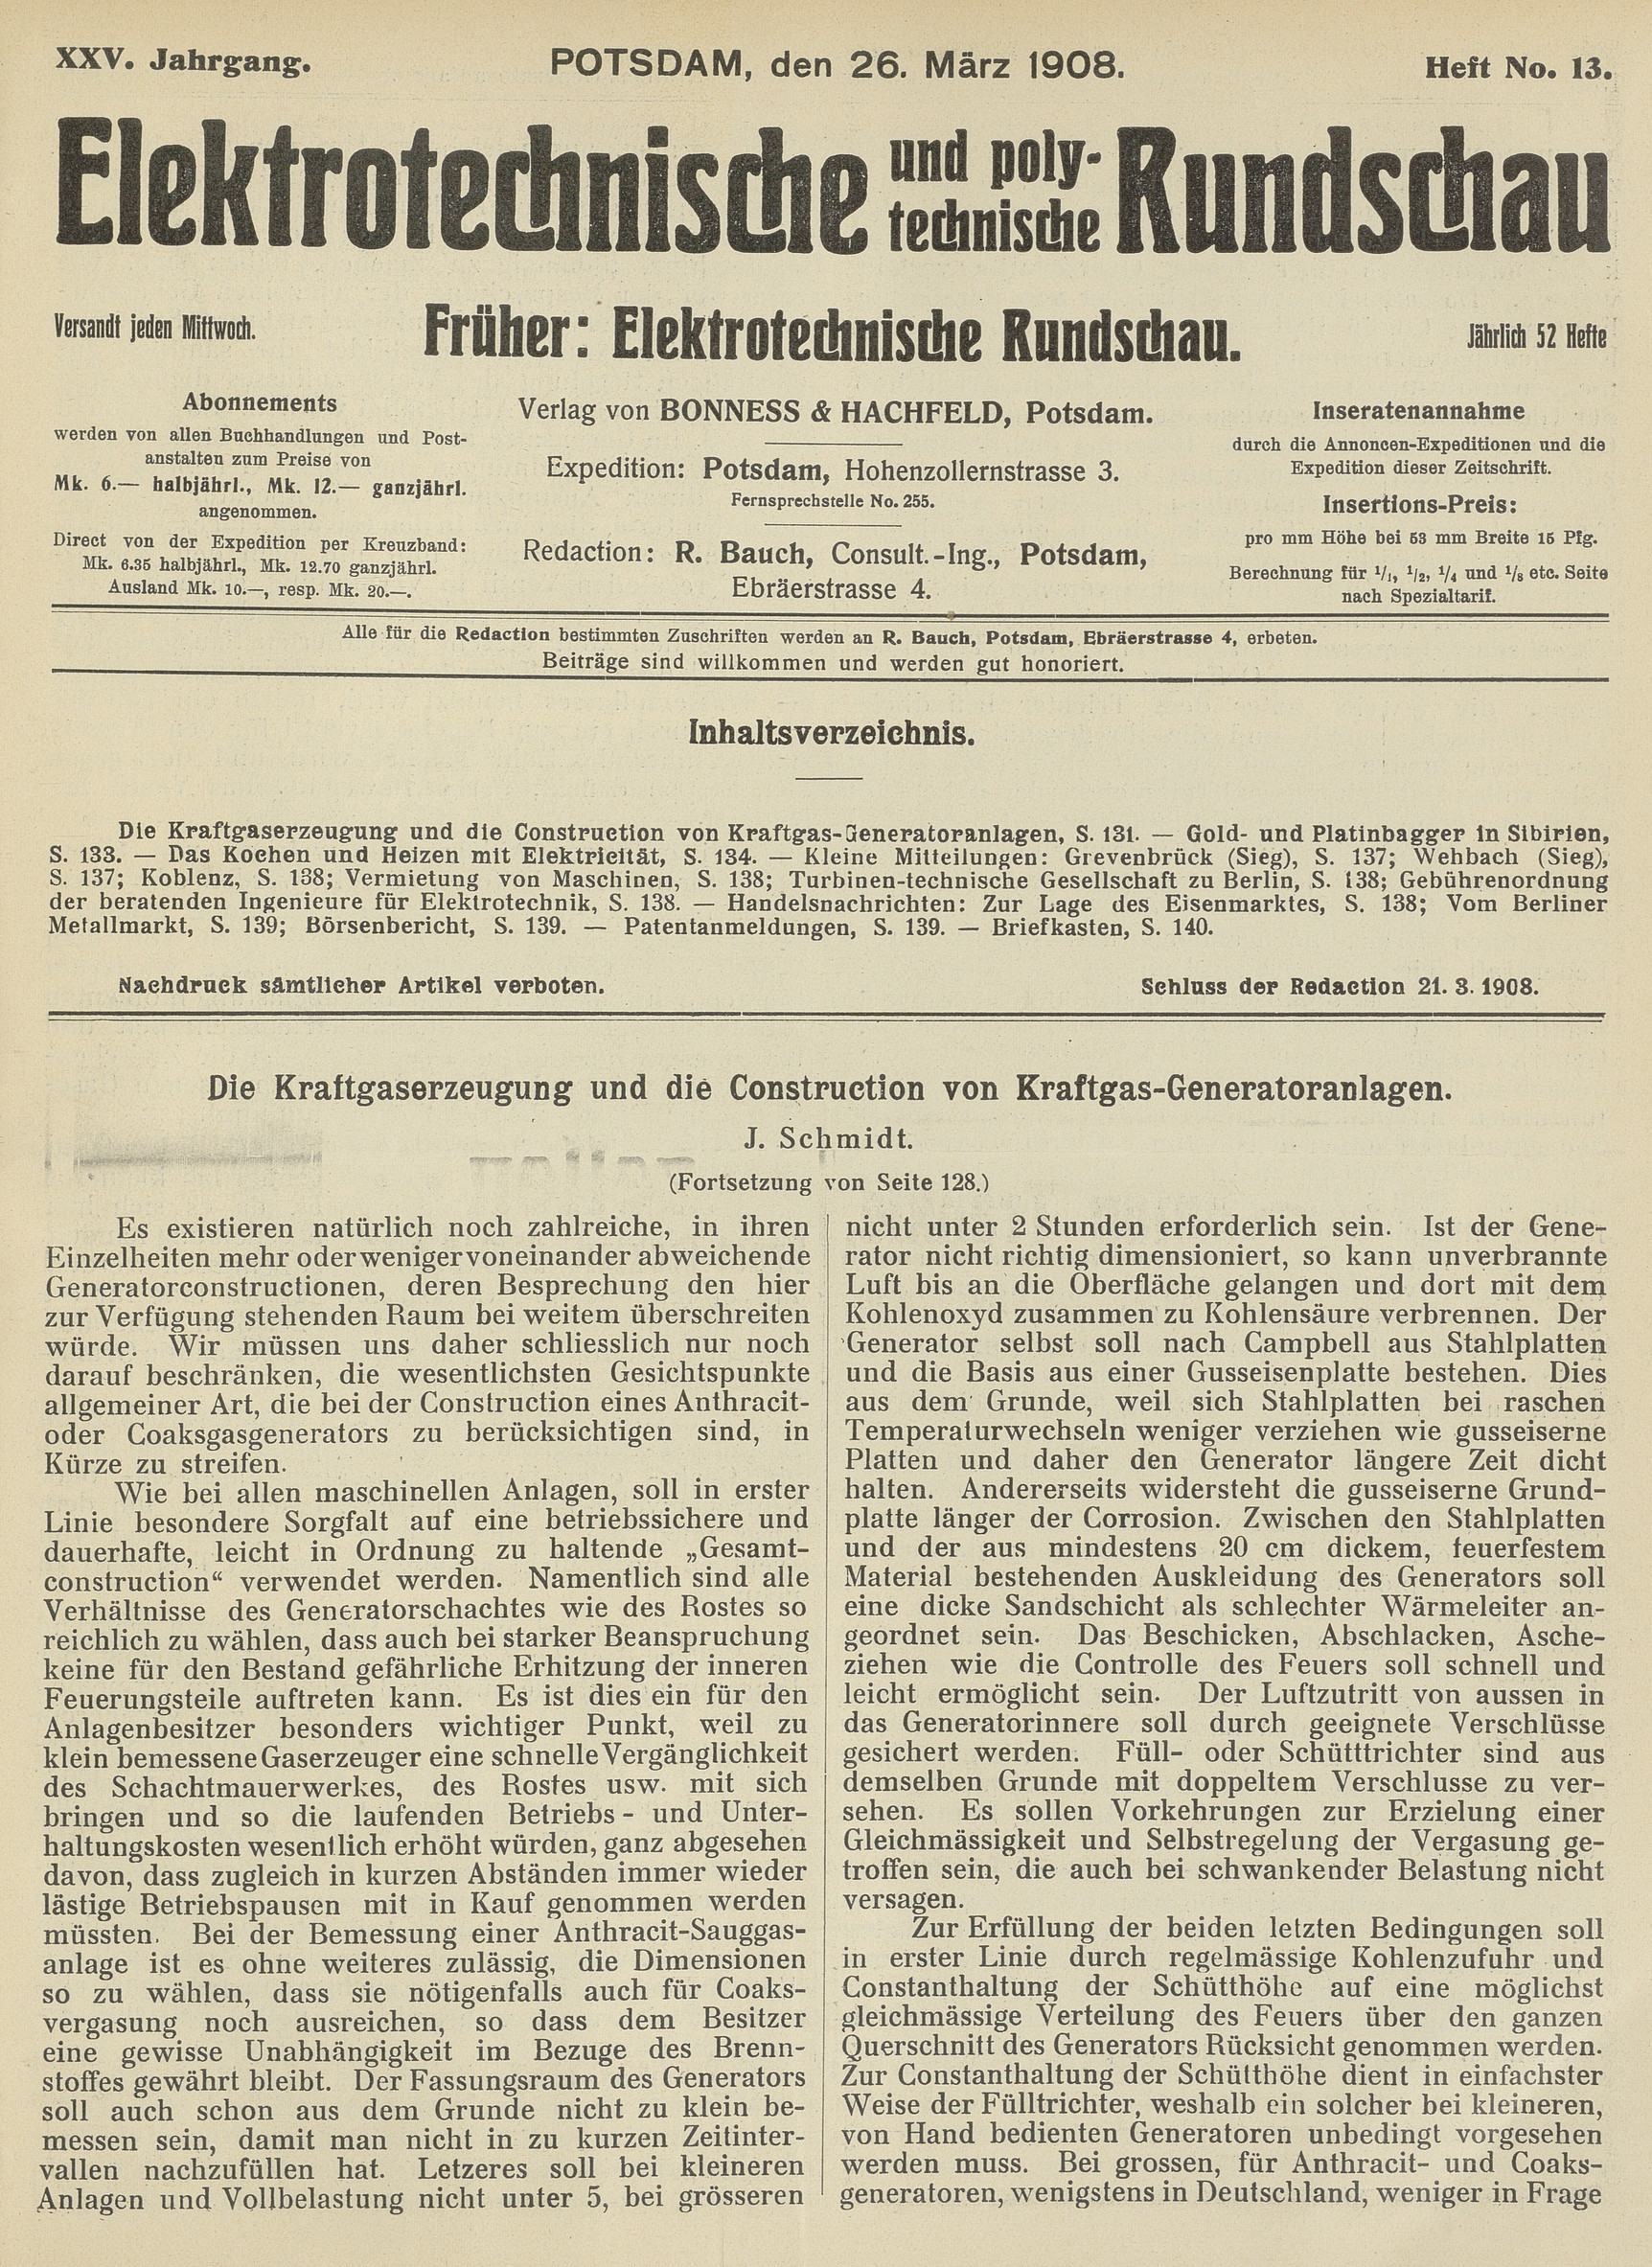 Elektrotechnische und polytechnische Rundschau, XXV. Jahrgang, Heft No. 13